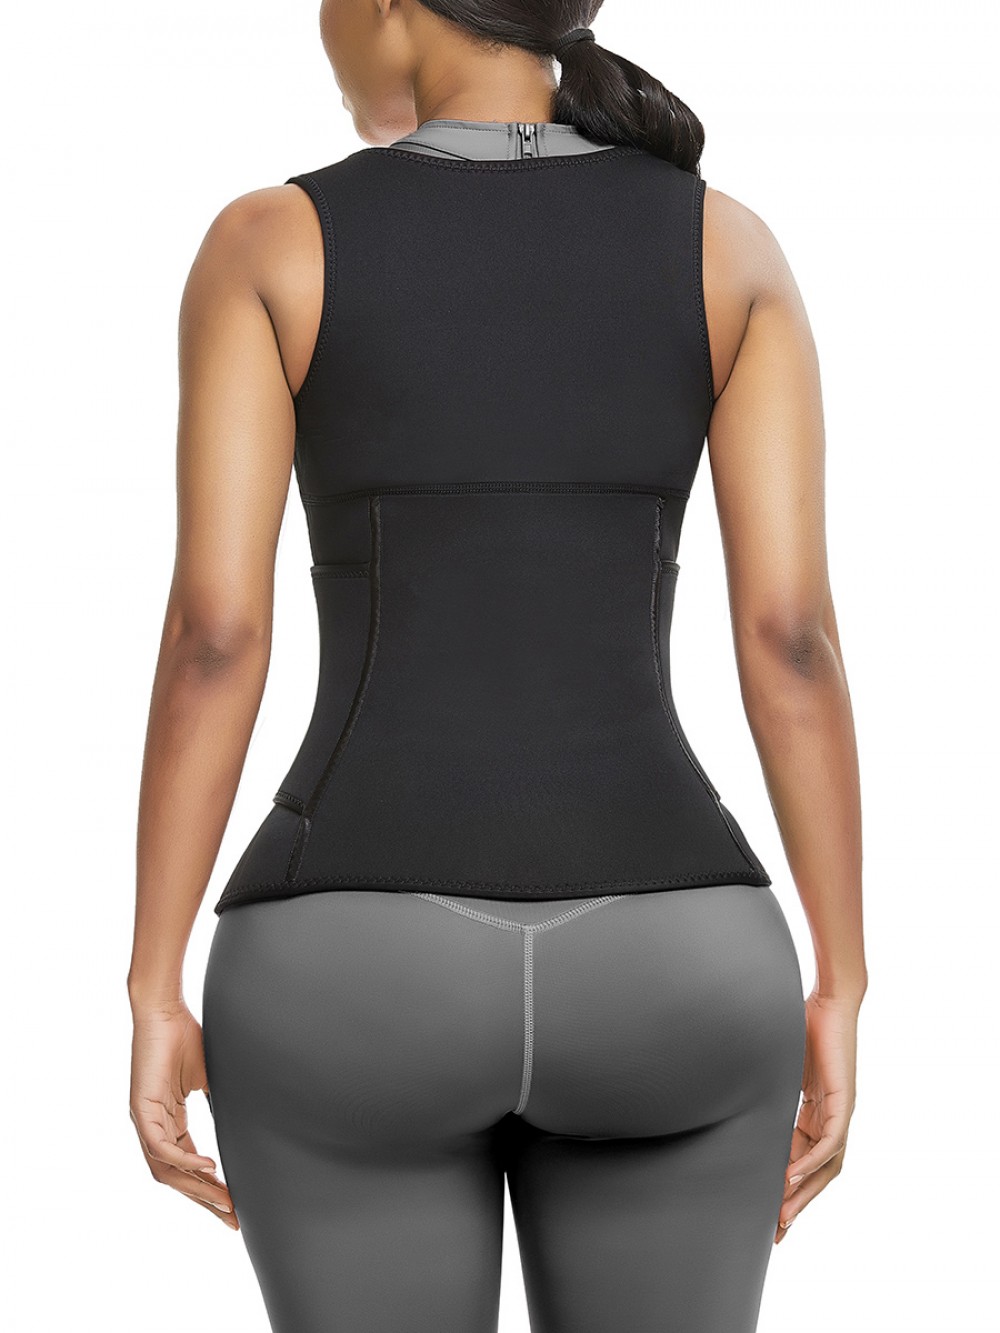 Cellulite Reducing Black Neoprene Waist Trainer Vest With Feelingirl Logo